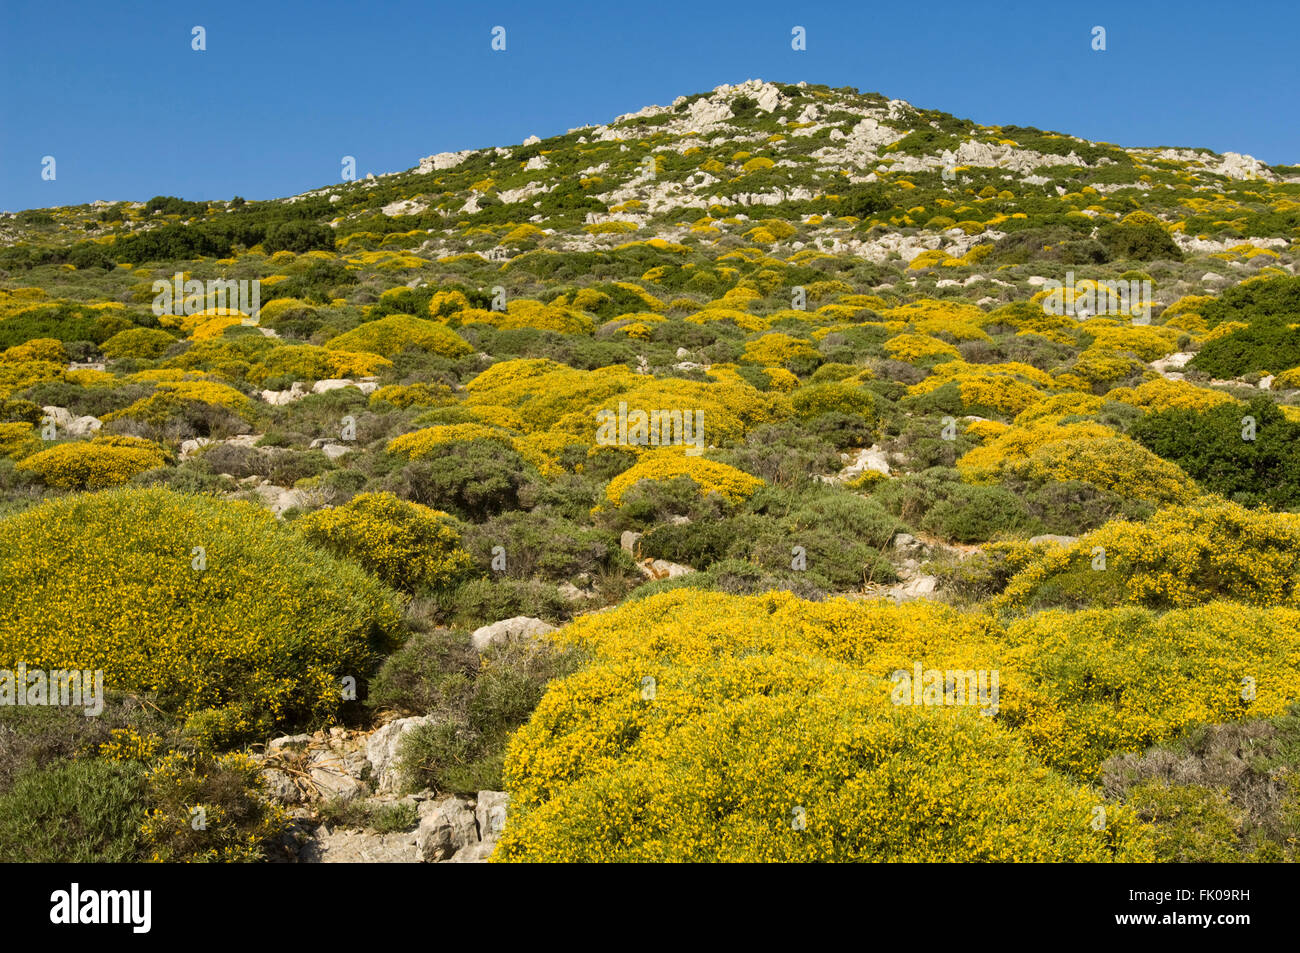 Griechenland, Kreta, Xerokambos, gelbe Macchie überzieht die Hügellandschaft an der Strasse nach Ziros Stock Photo